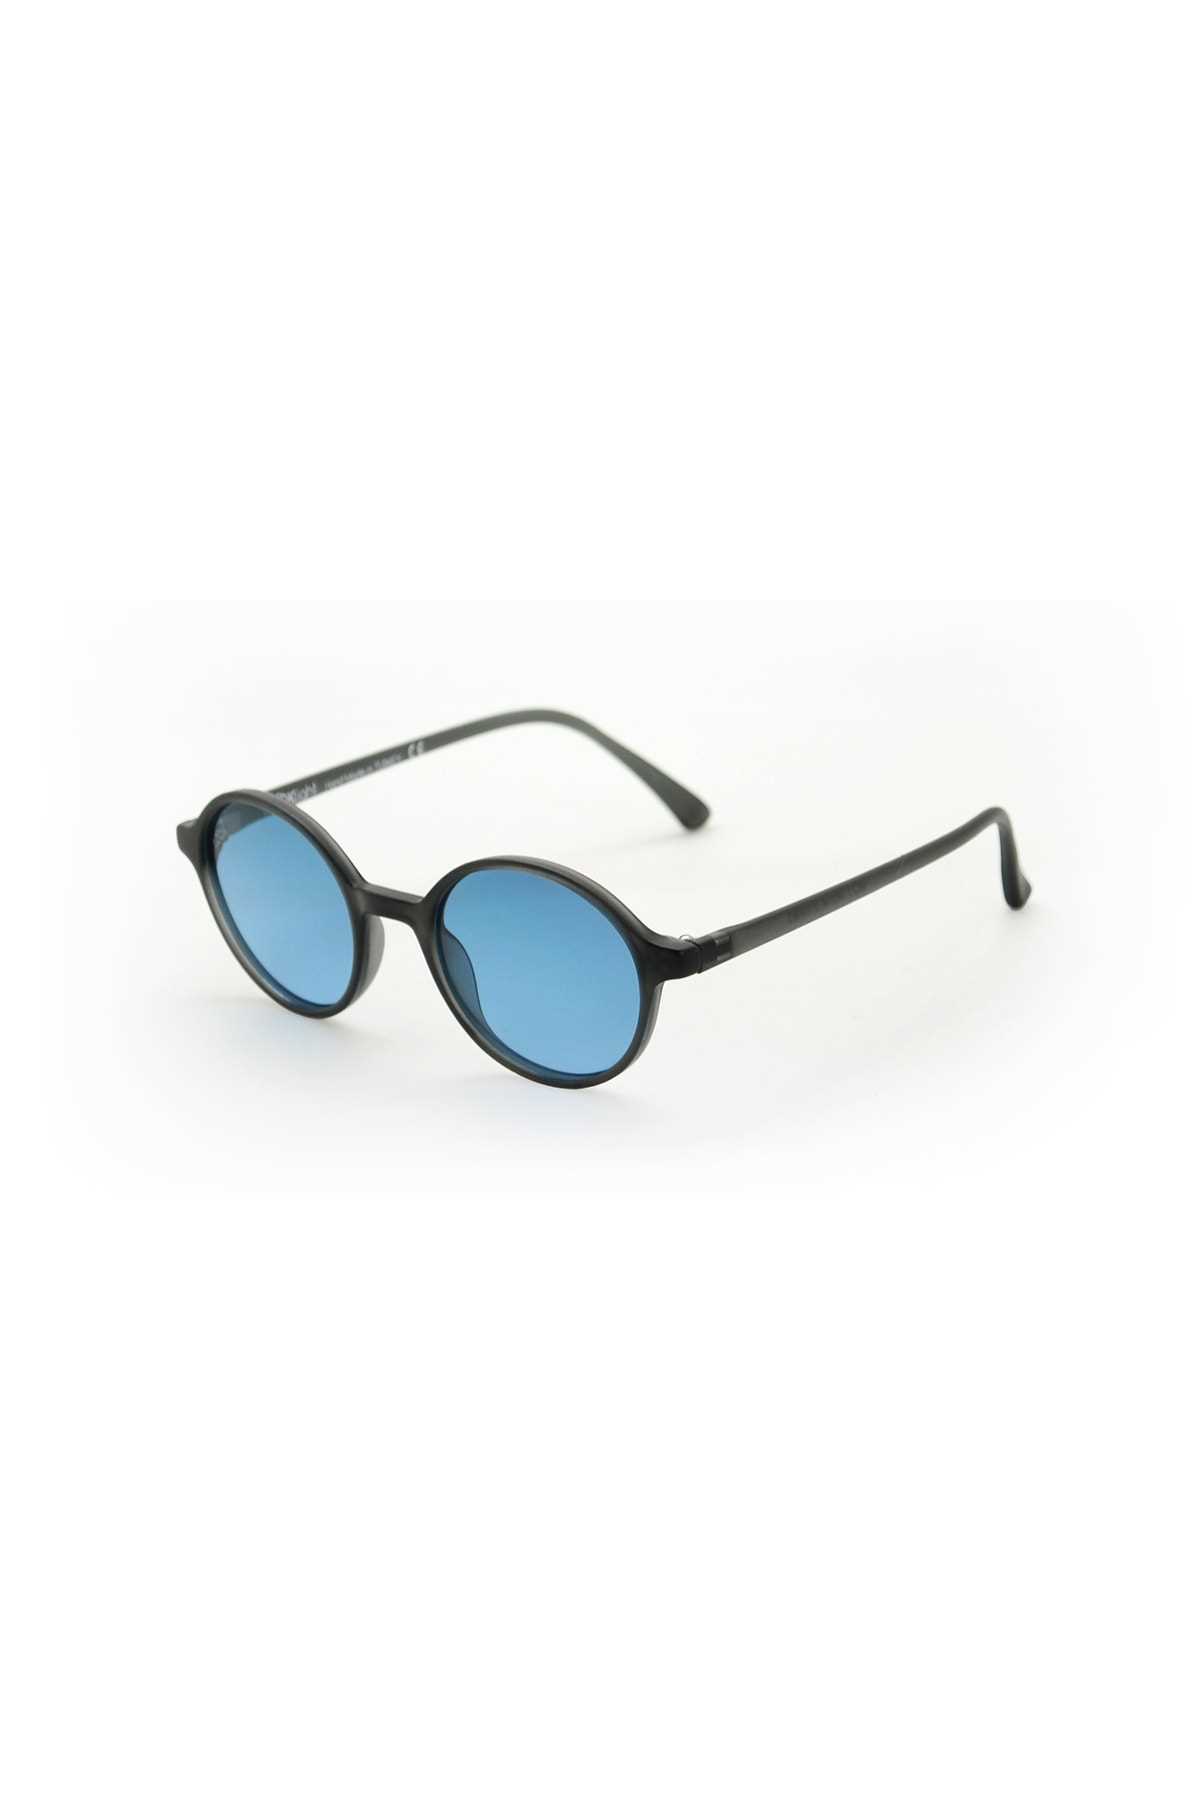 عینک آفتابی زنانه ارزان برند LOOKlight رنگ نقره ای کد ty76588014